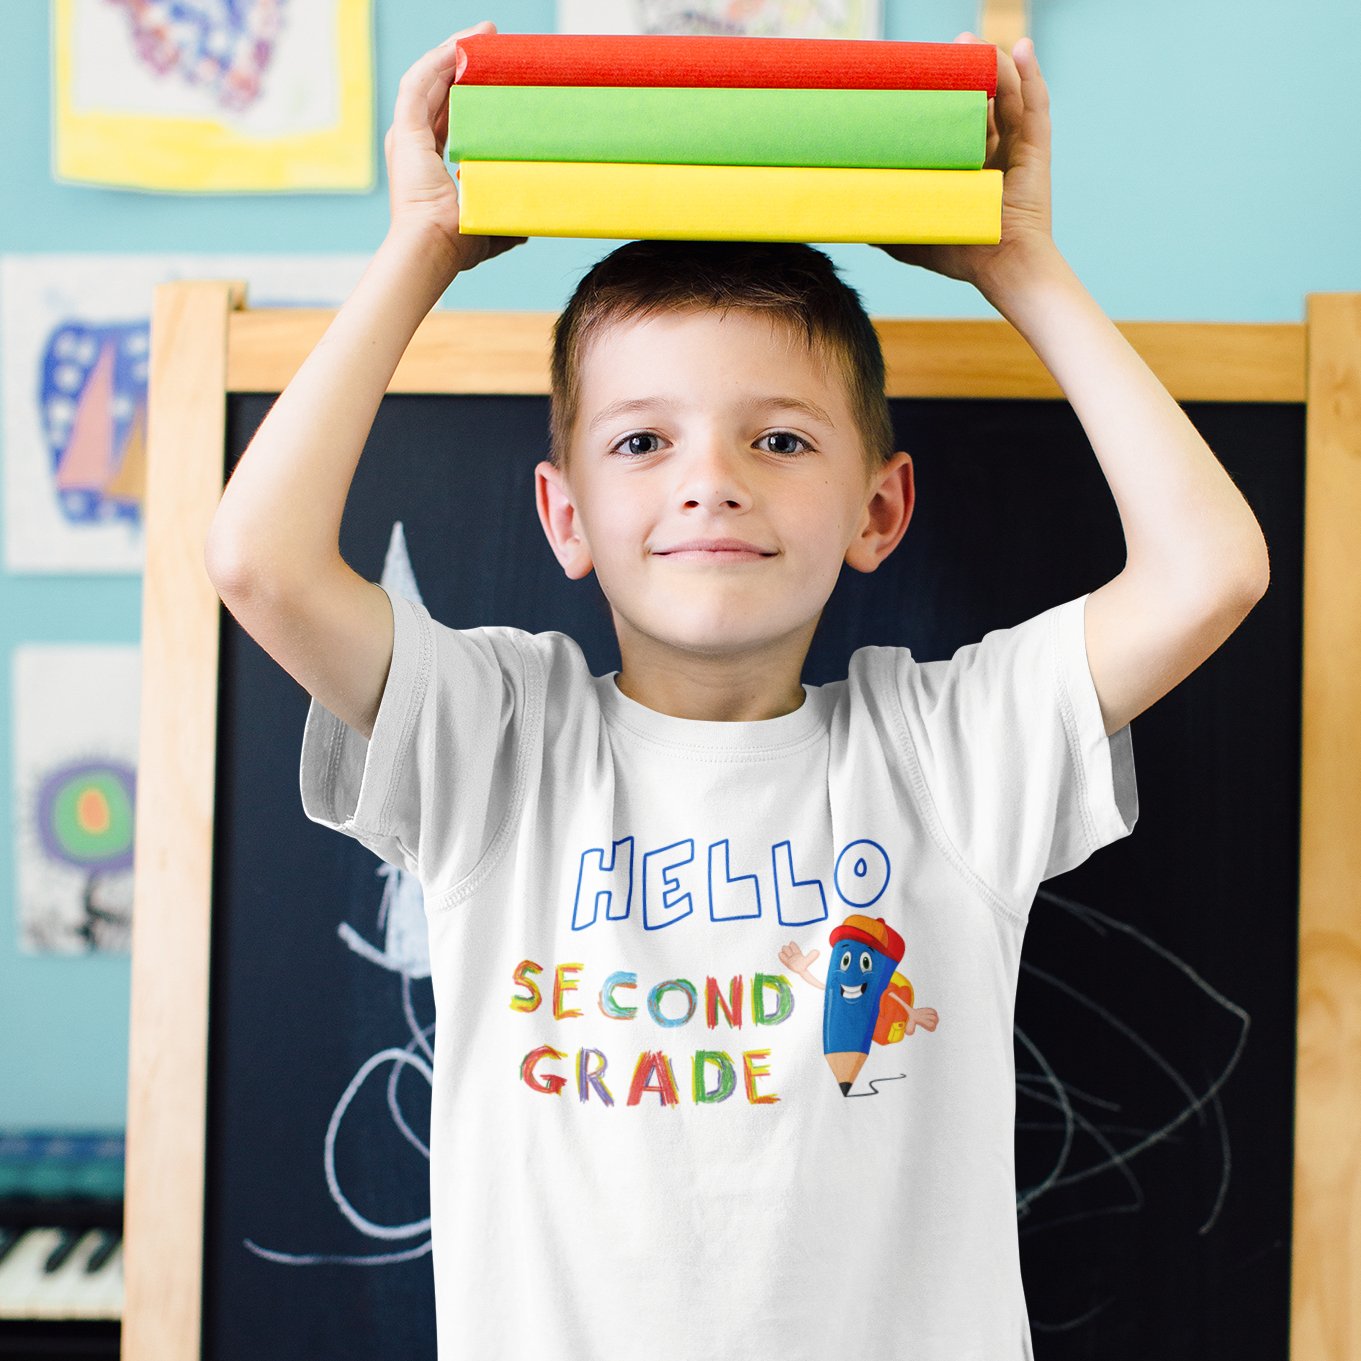 Hello, Second Grade: Super Scholar T-shirt – Where Learning and Fun Unite!